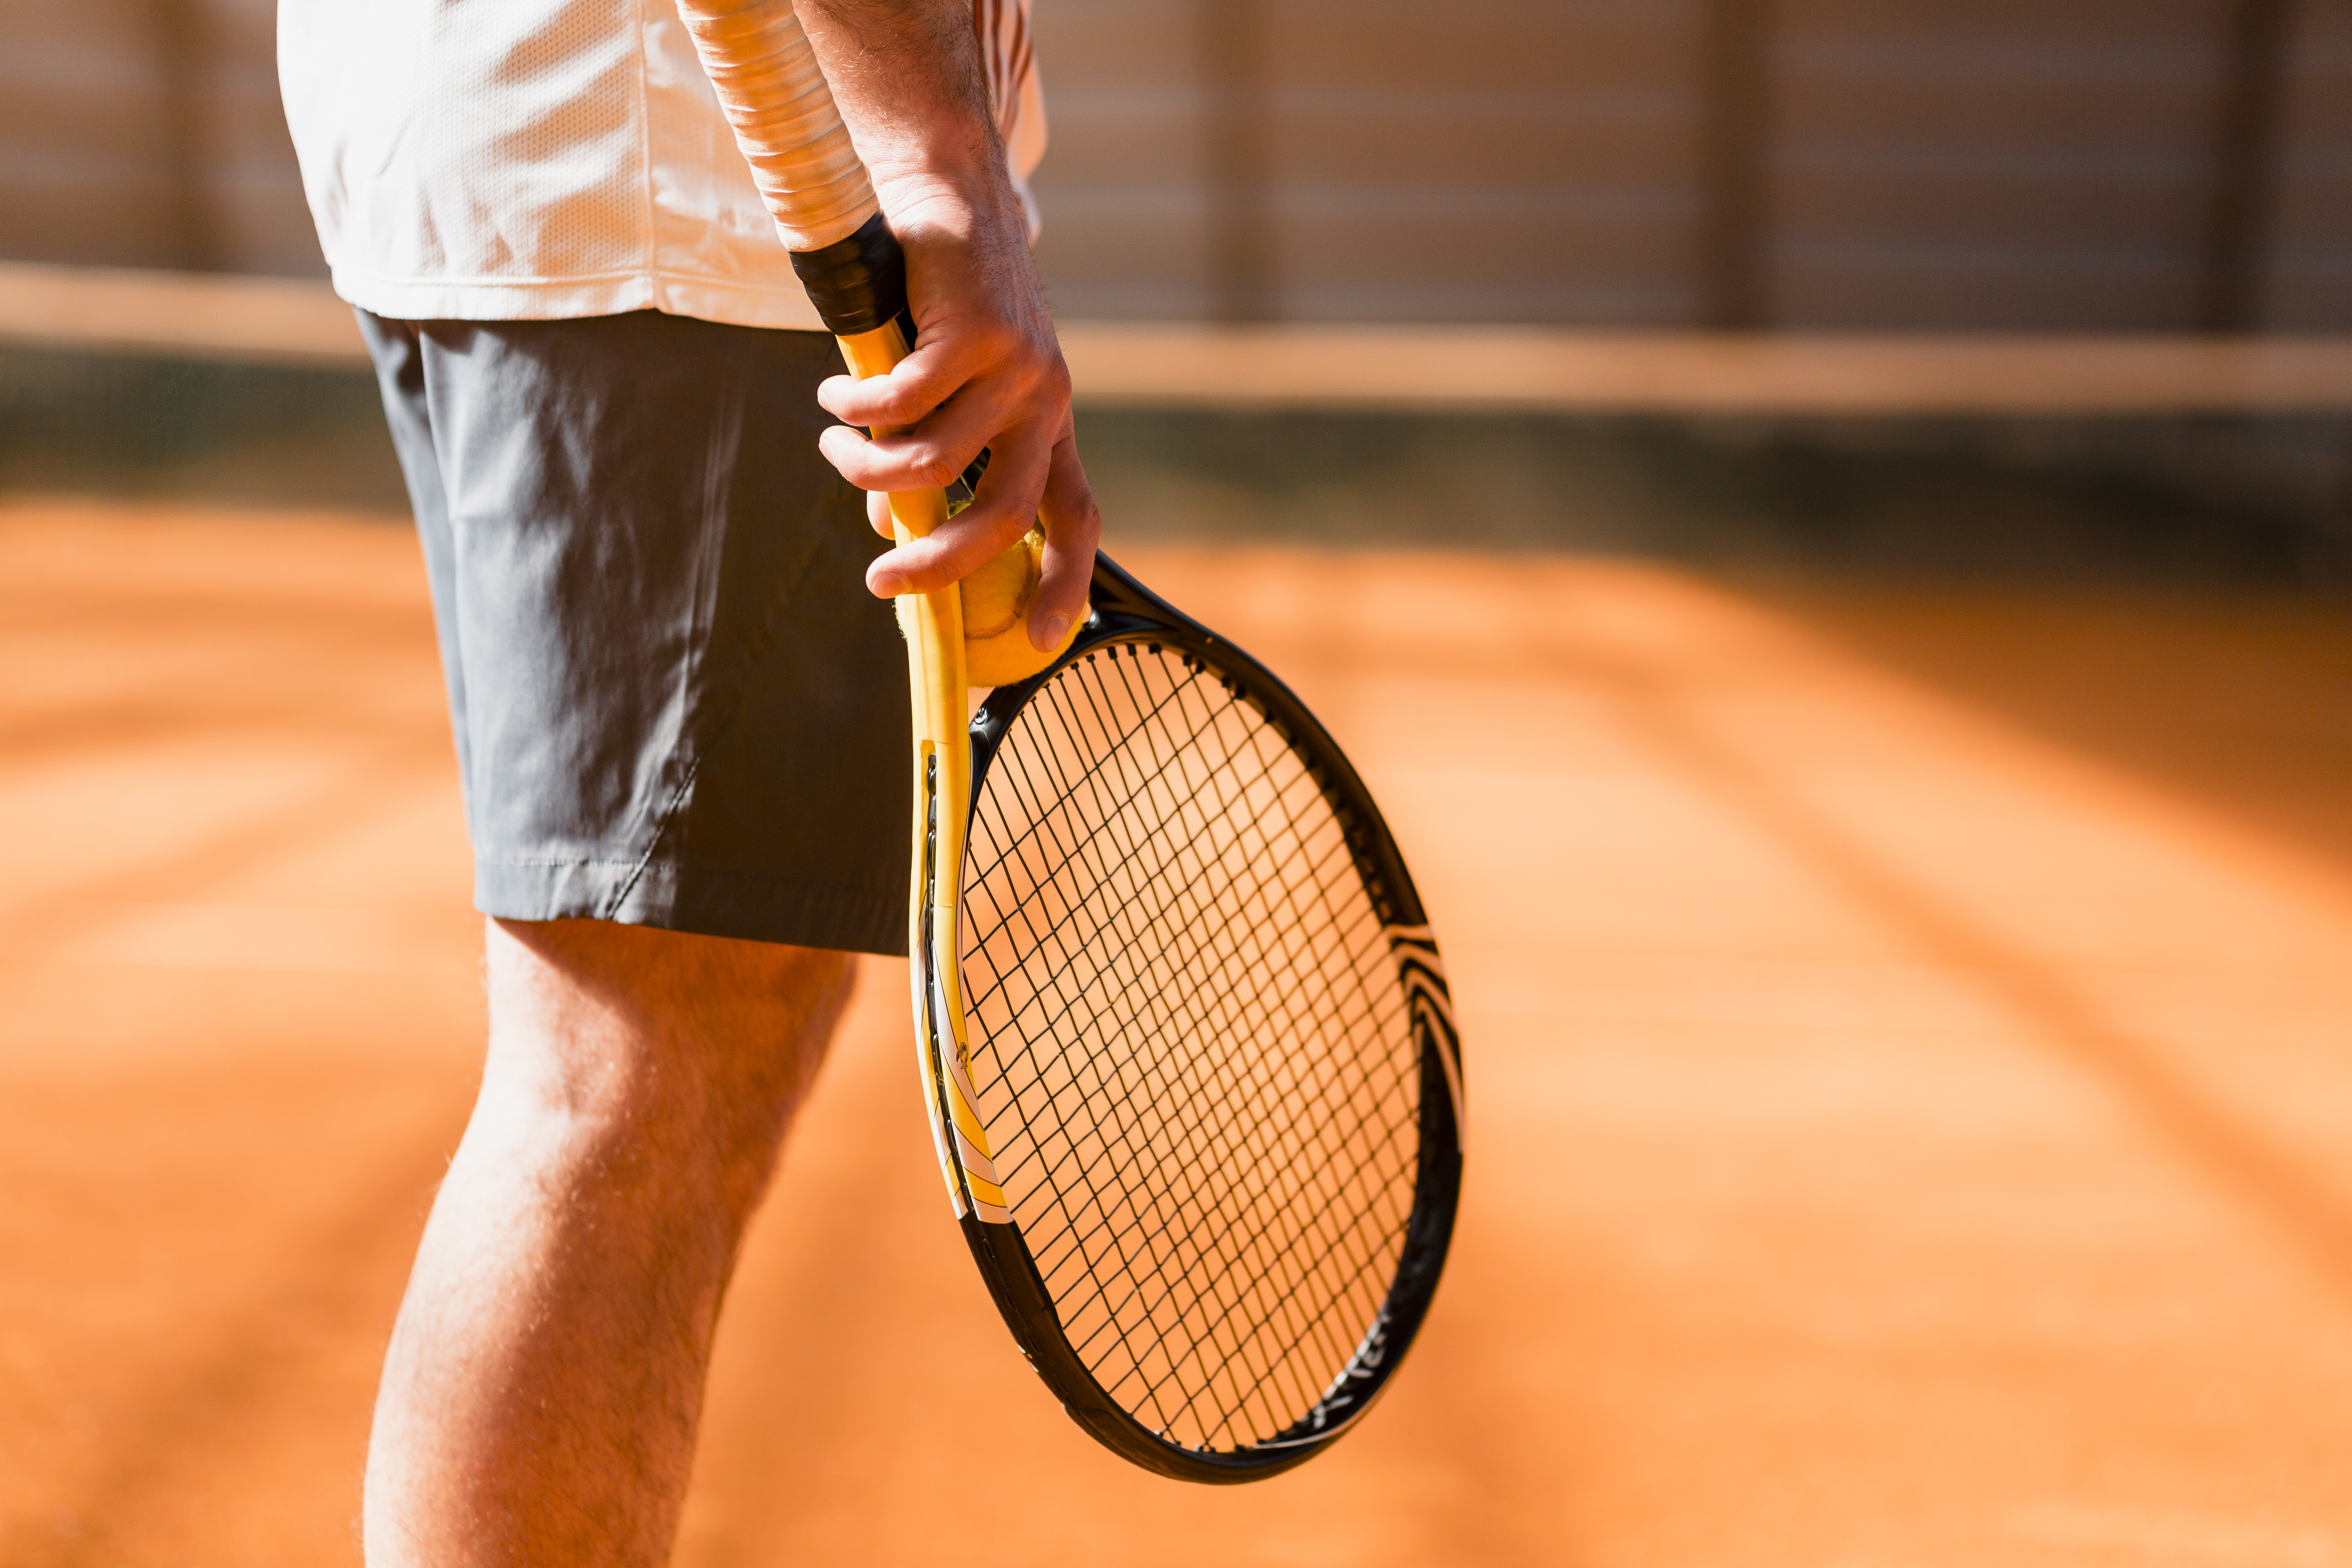 Quanto tempo dura uma partida de beach tennis?